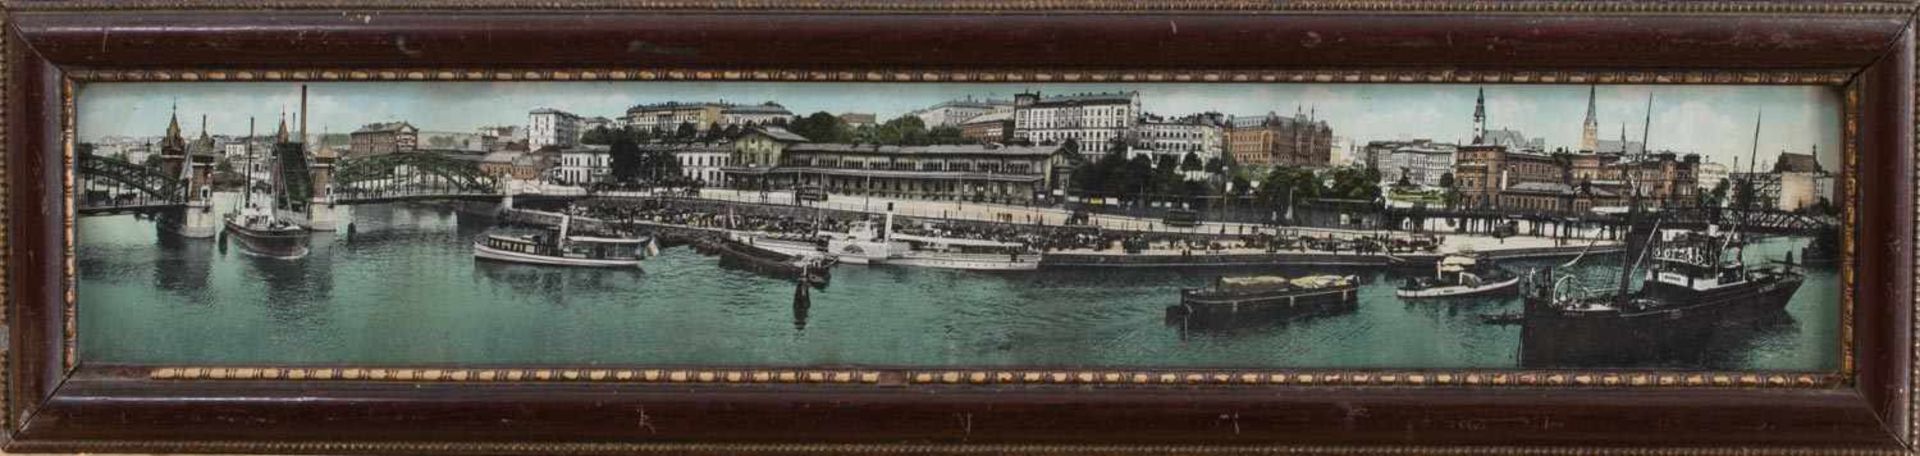 Unbekannter PhotographAnsicht StettinPanoramafoto um 1910, 8,5 x 55 cm, gerahmt